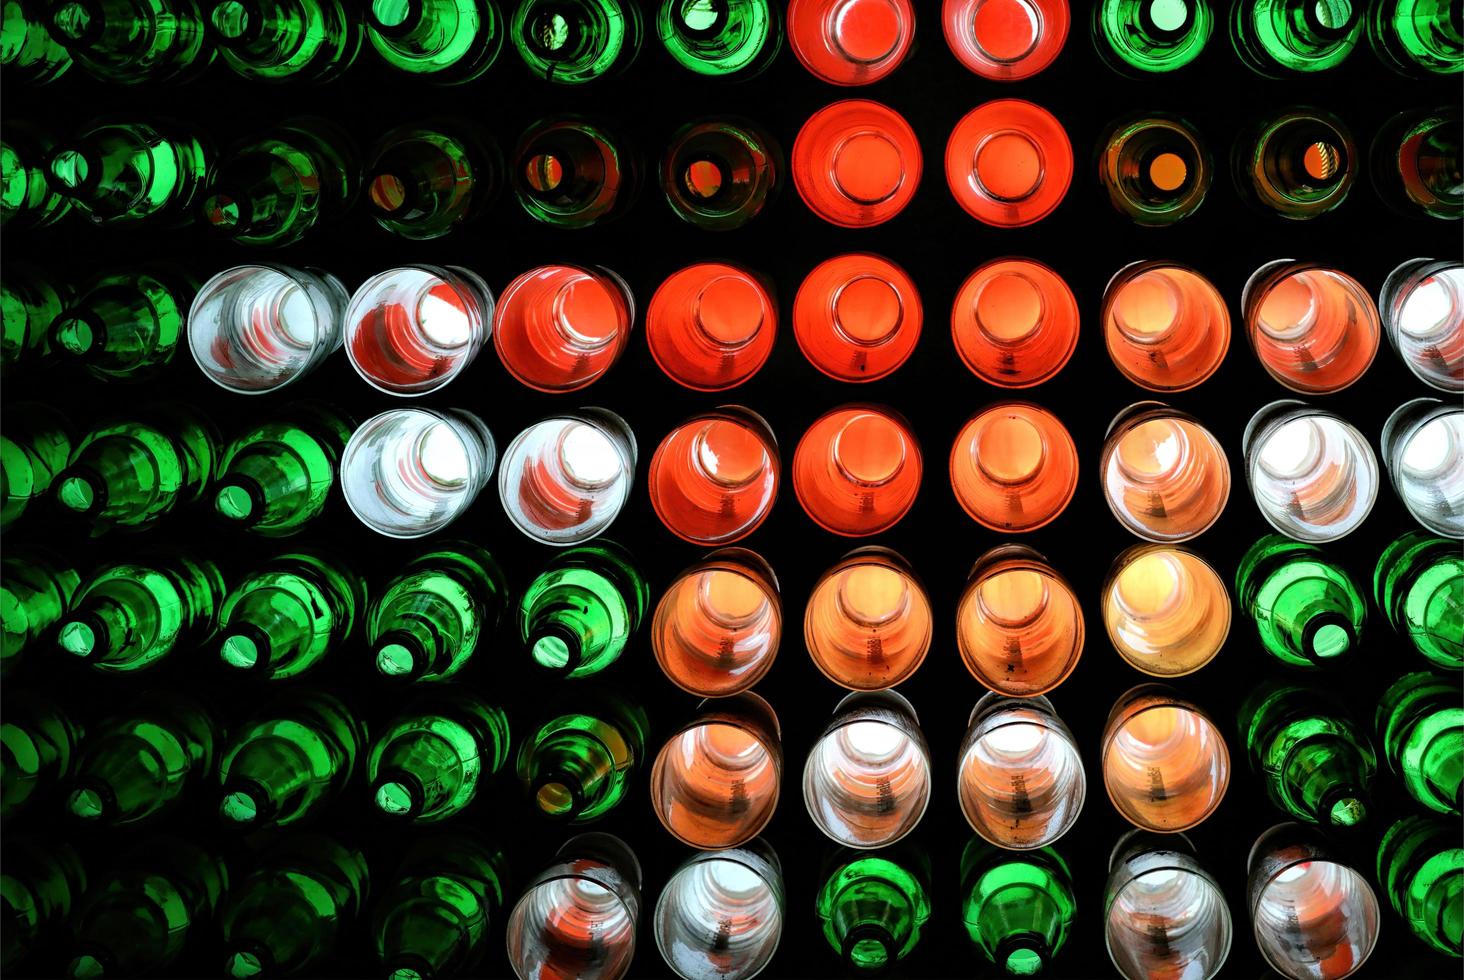 décoration colorée de bouteilles avec éclairage la nuit, décoration murale faite de bouteilles réutilisées photo